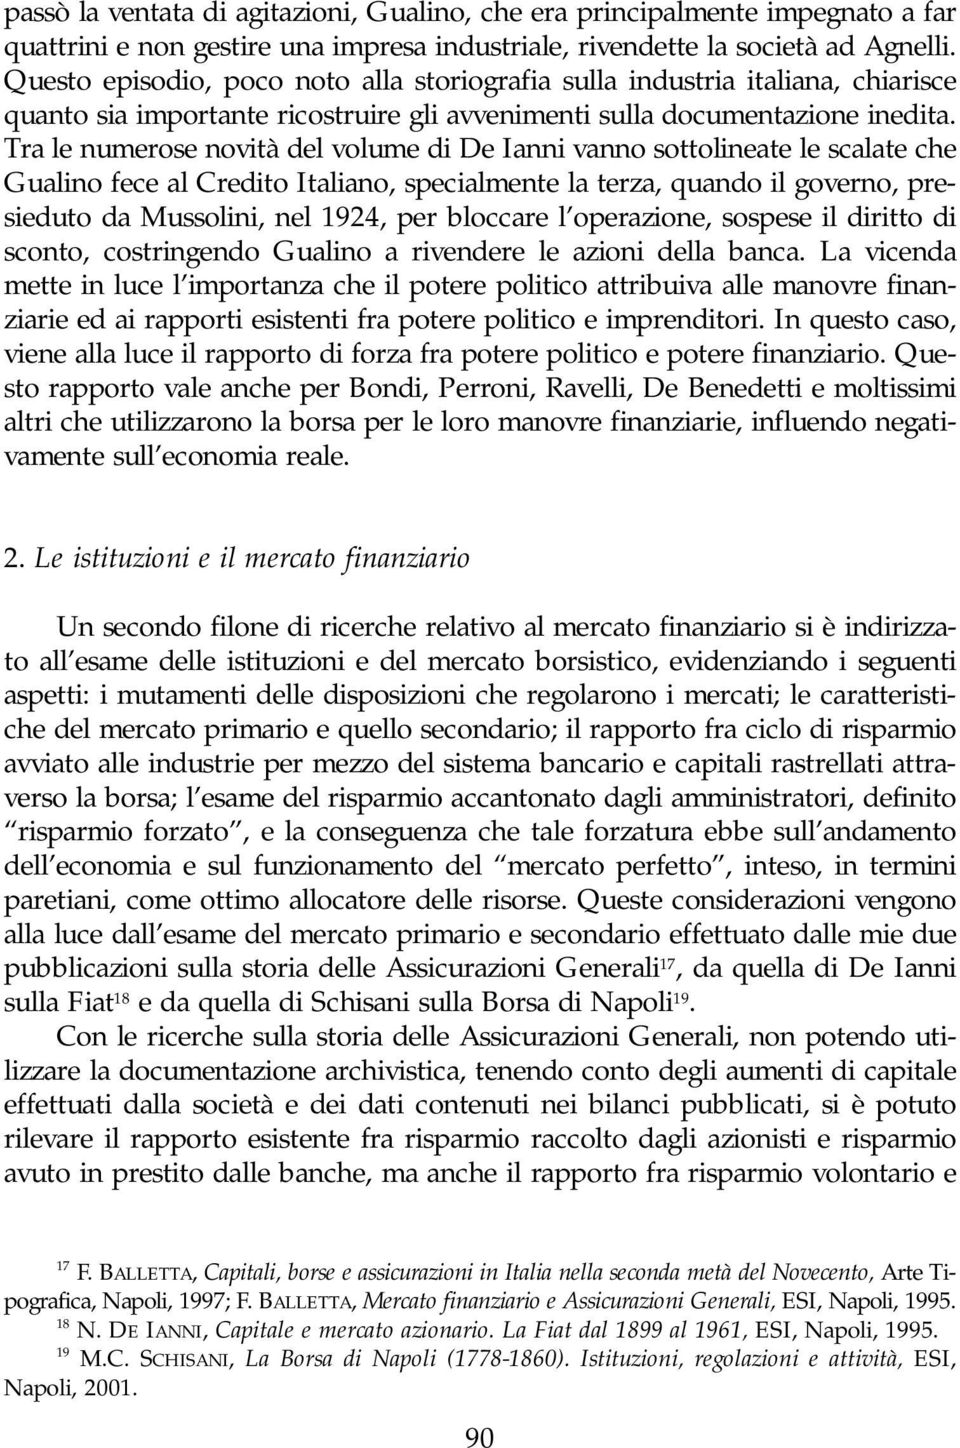 Tra le numerose novità del volume di De Ianni vanno sottolineate le scalate che Gualino fece al Credito Italiano, specialmente la terza, quando il governo, presieduto da Mussolini, nel 1924, per